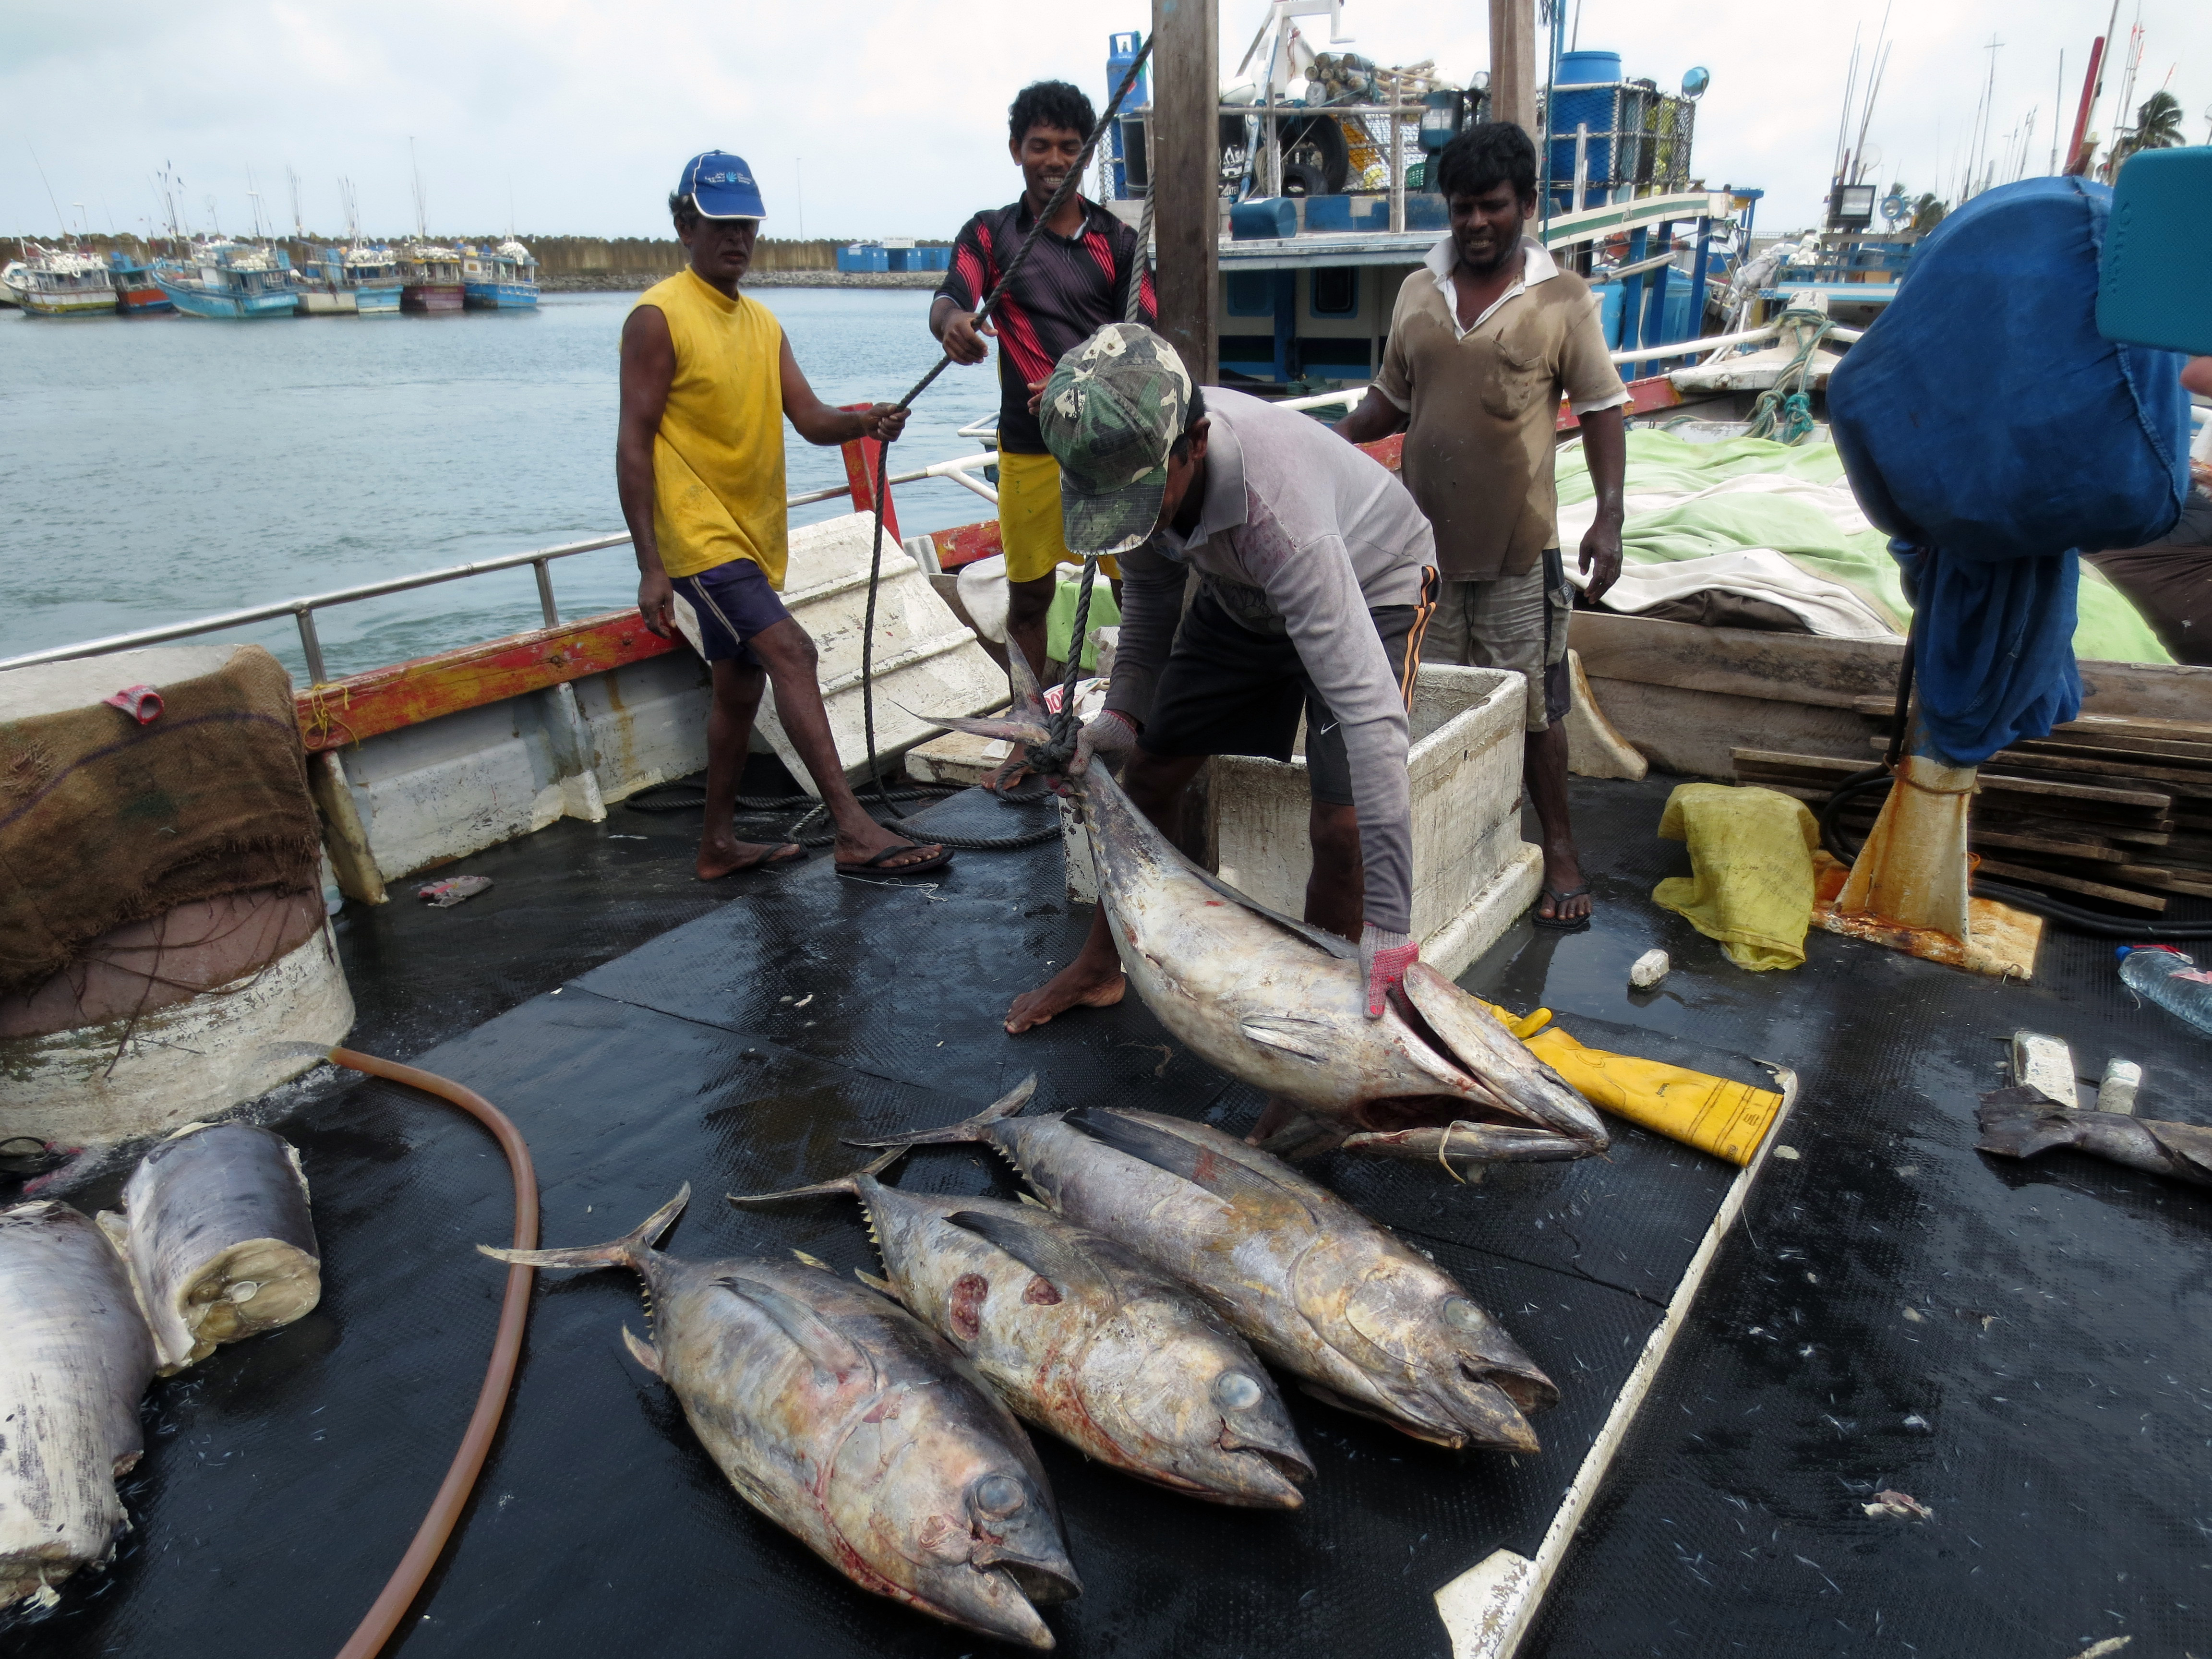 Fishermen, communities need more than healthy fish stocks | UW News